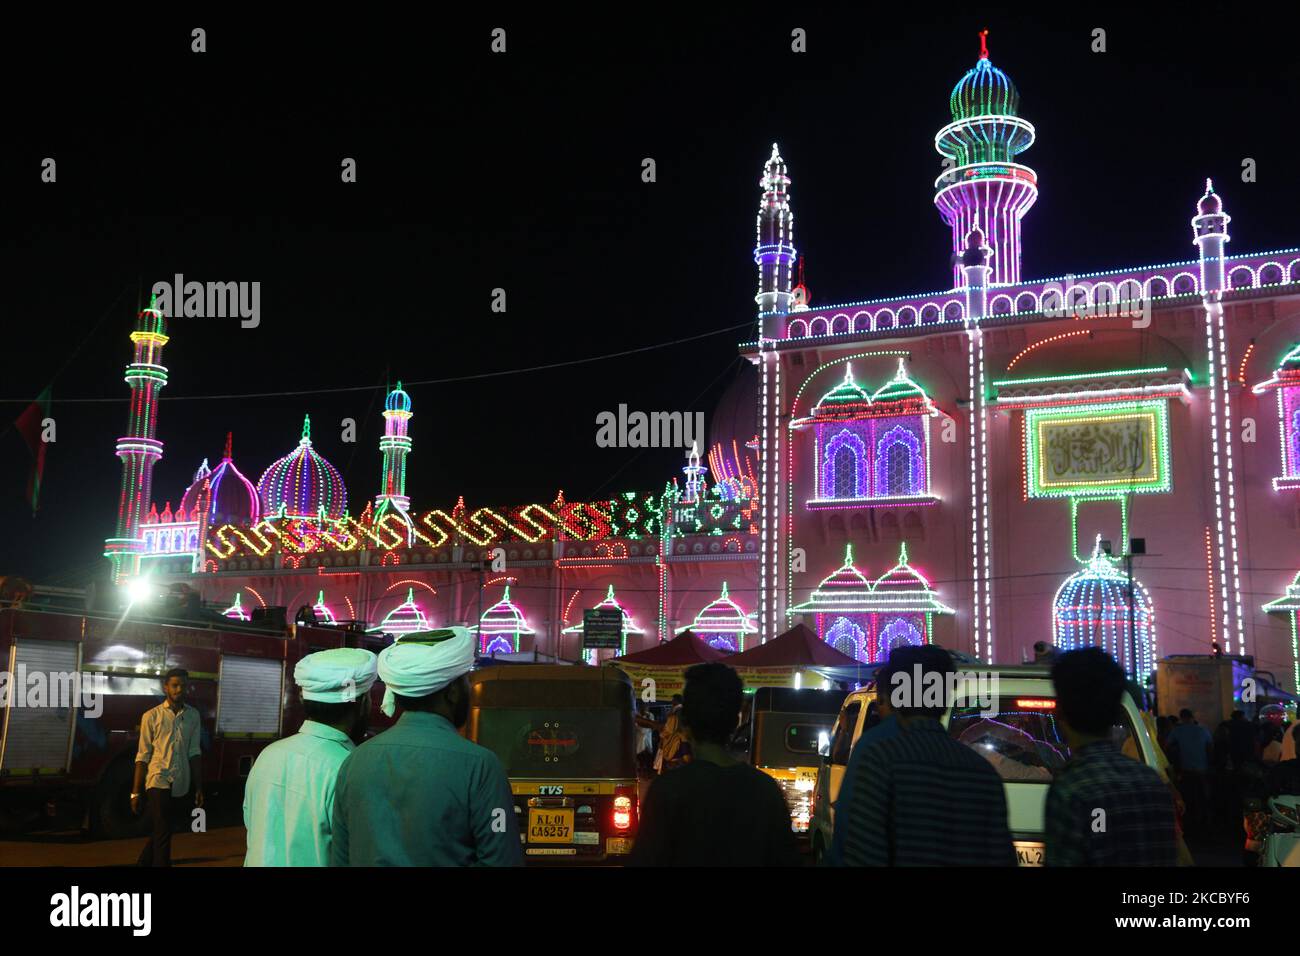 La mosquée Beemapally (Beemapally Dargah Shareef) est illuminée pendant le festival Beemapally Uroos (également connu sous le nom de Chandanakudam Mahotsavam ou Beebapally Urs Festival) sur 15 février 2019 à Thiruvananthapuram (Trivandrum), Kerala, Inde. La mosquée Beemapally est célèbre pour son Ours annuel qui attire des tronnets de pèlerins de tous horizons. Le dernier jour de l'Ours, un drapeau de la tombe de Beema Bibi est pris et il y a une grande procession avec des éléphants en caparisonés et la musique du panchavadyam (cinq instruments). Le festival marque l'anniversaire de la mort de Syedunnisa Beema be Banque D'Images